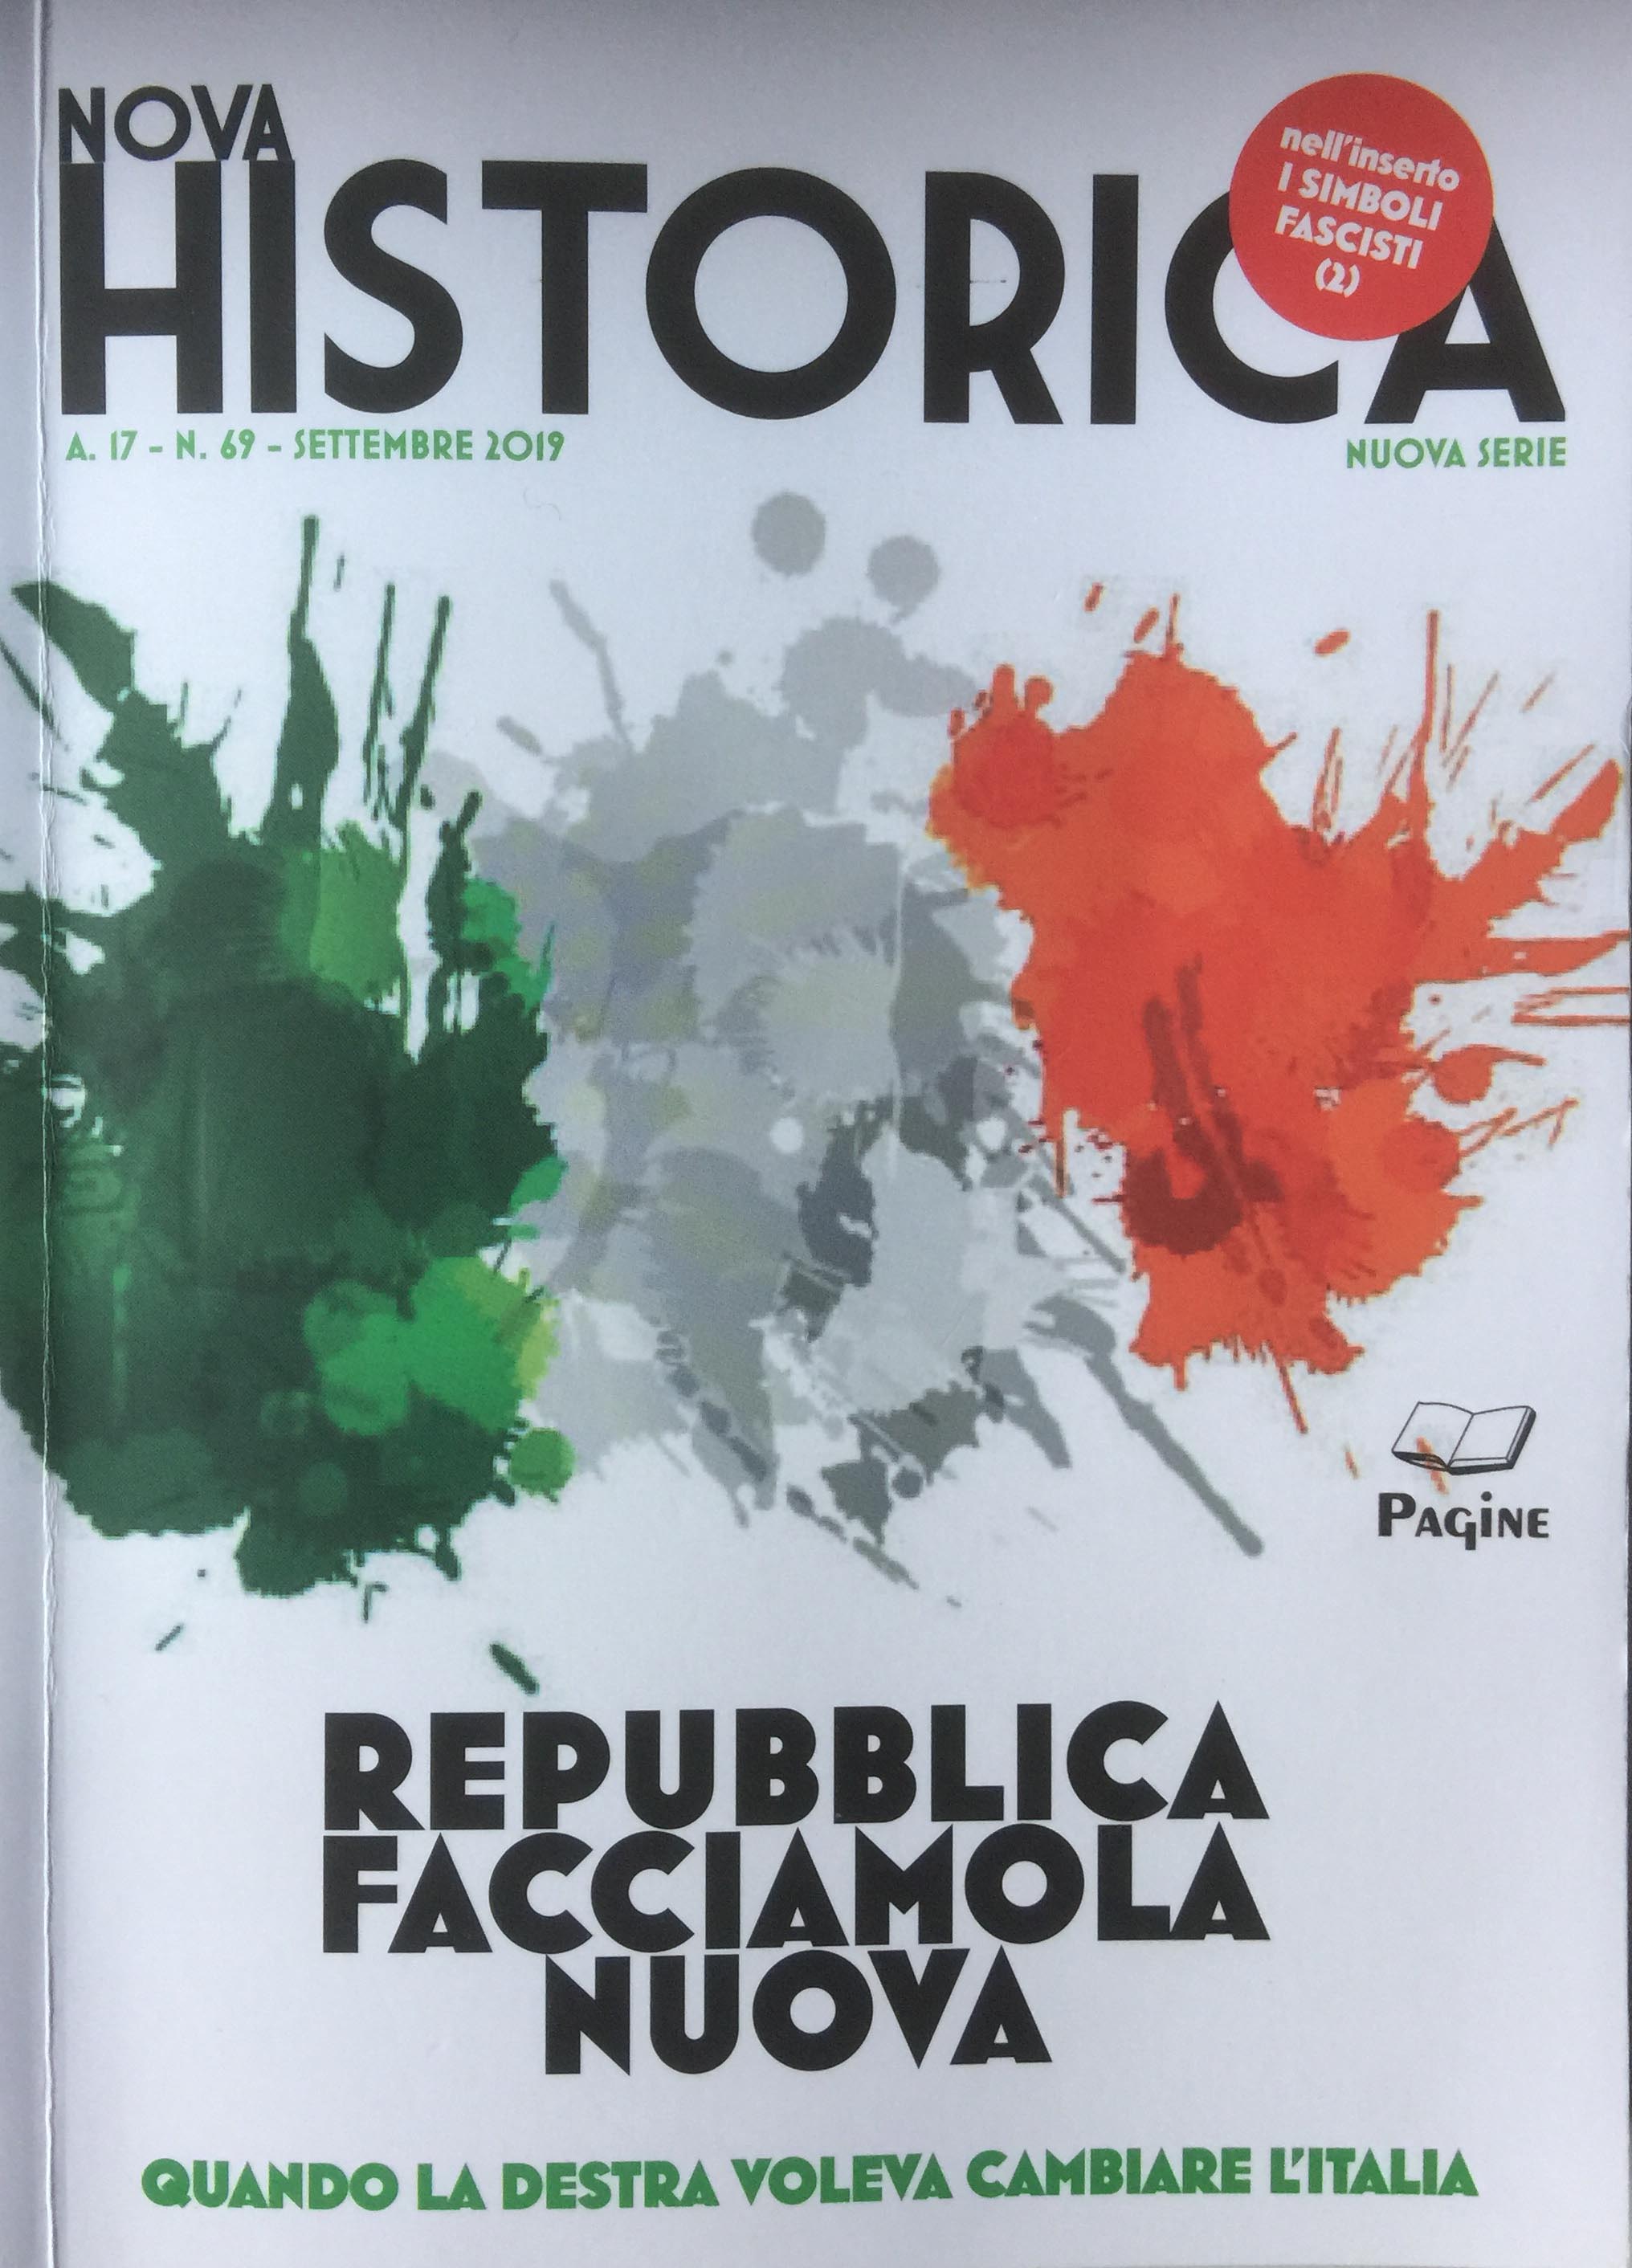 Il fascicolo di “Nova Historica”. Quando la destra voleva cambiare l’italia